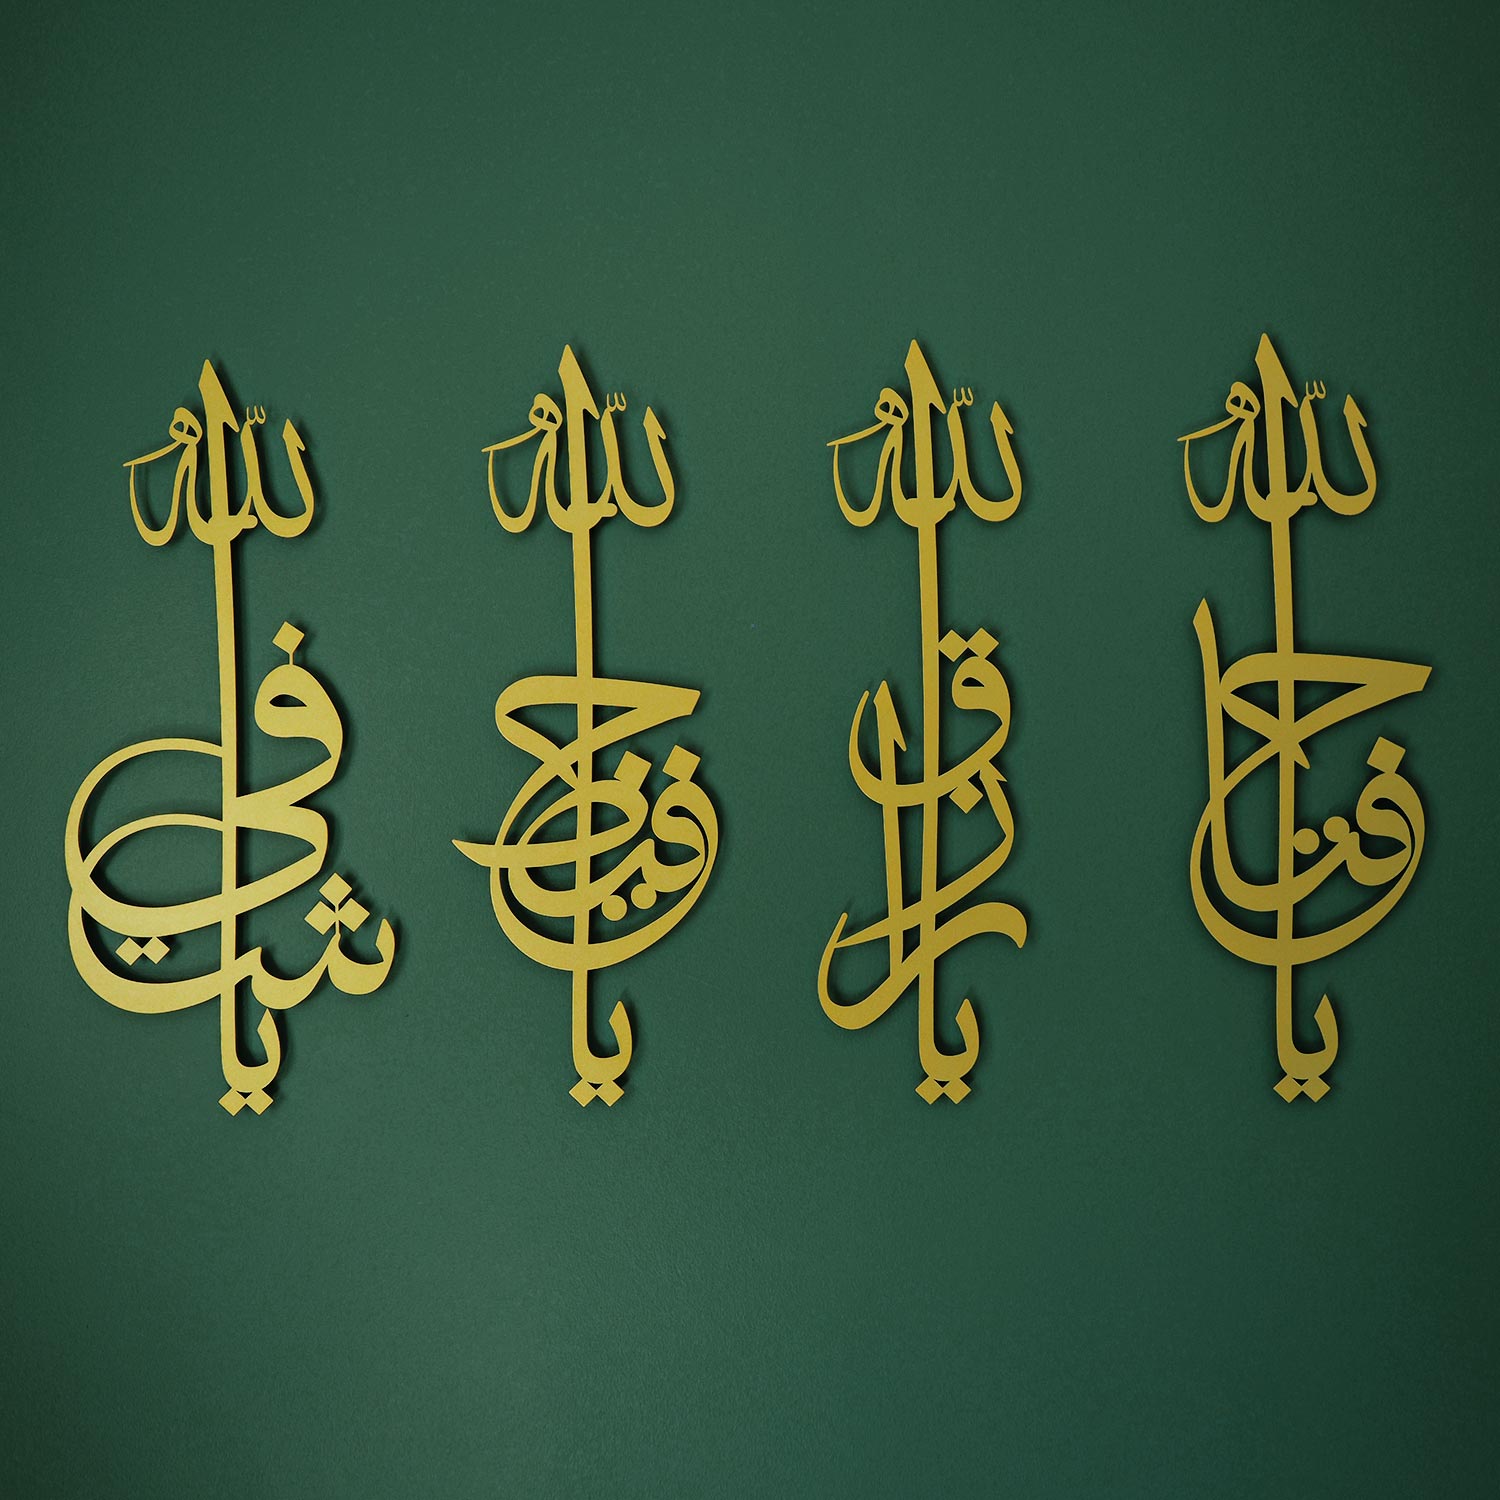 مجموعة لوحات اسماء الله الحسنى - من المعدن